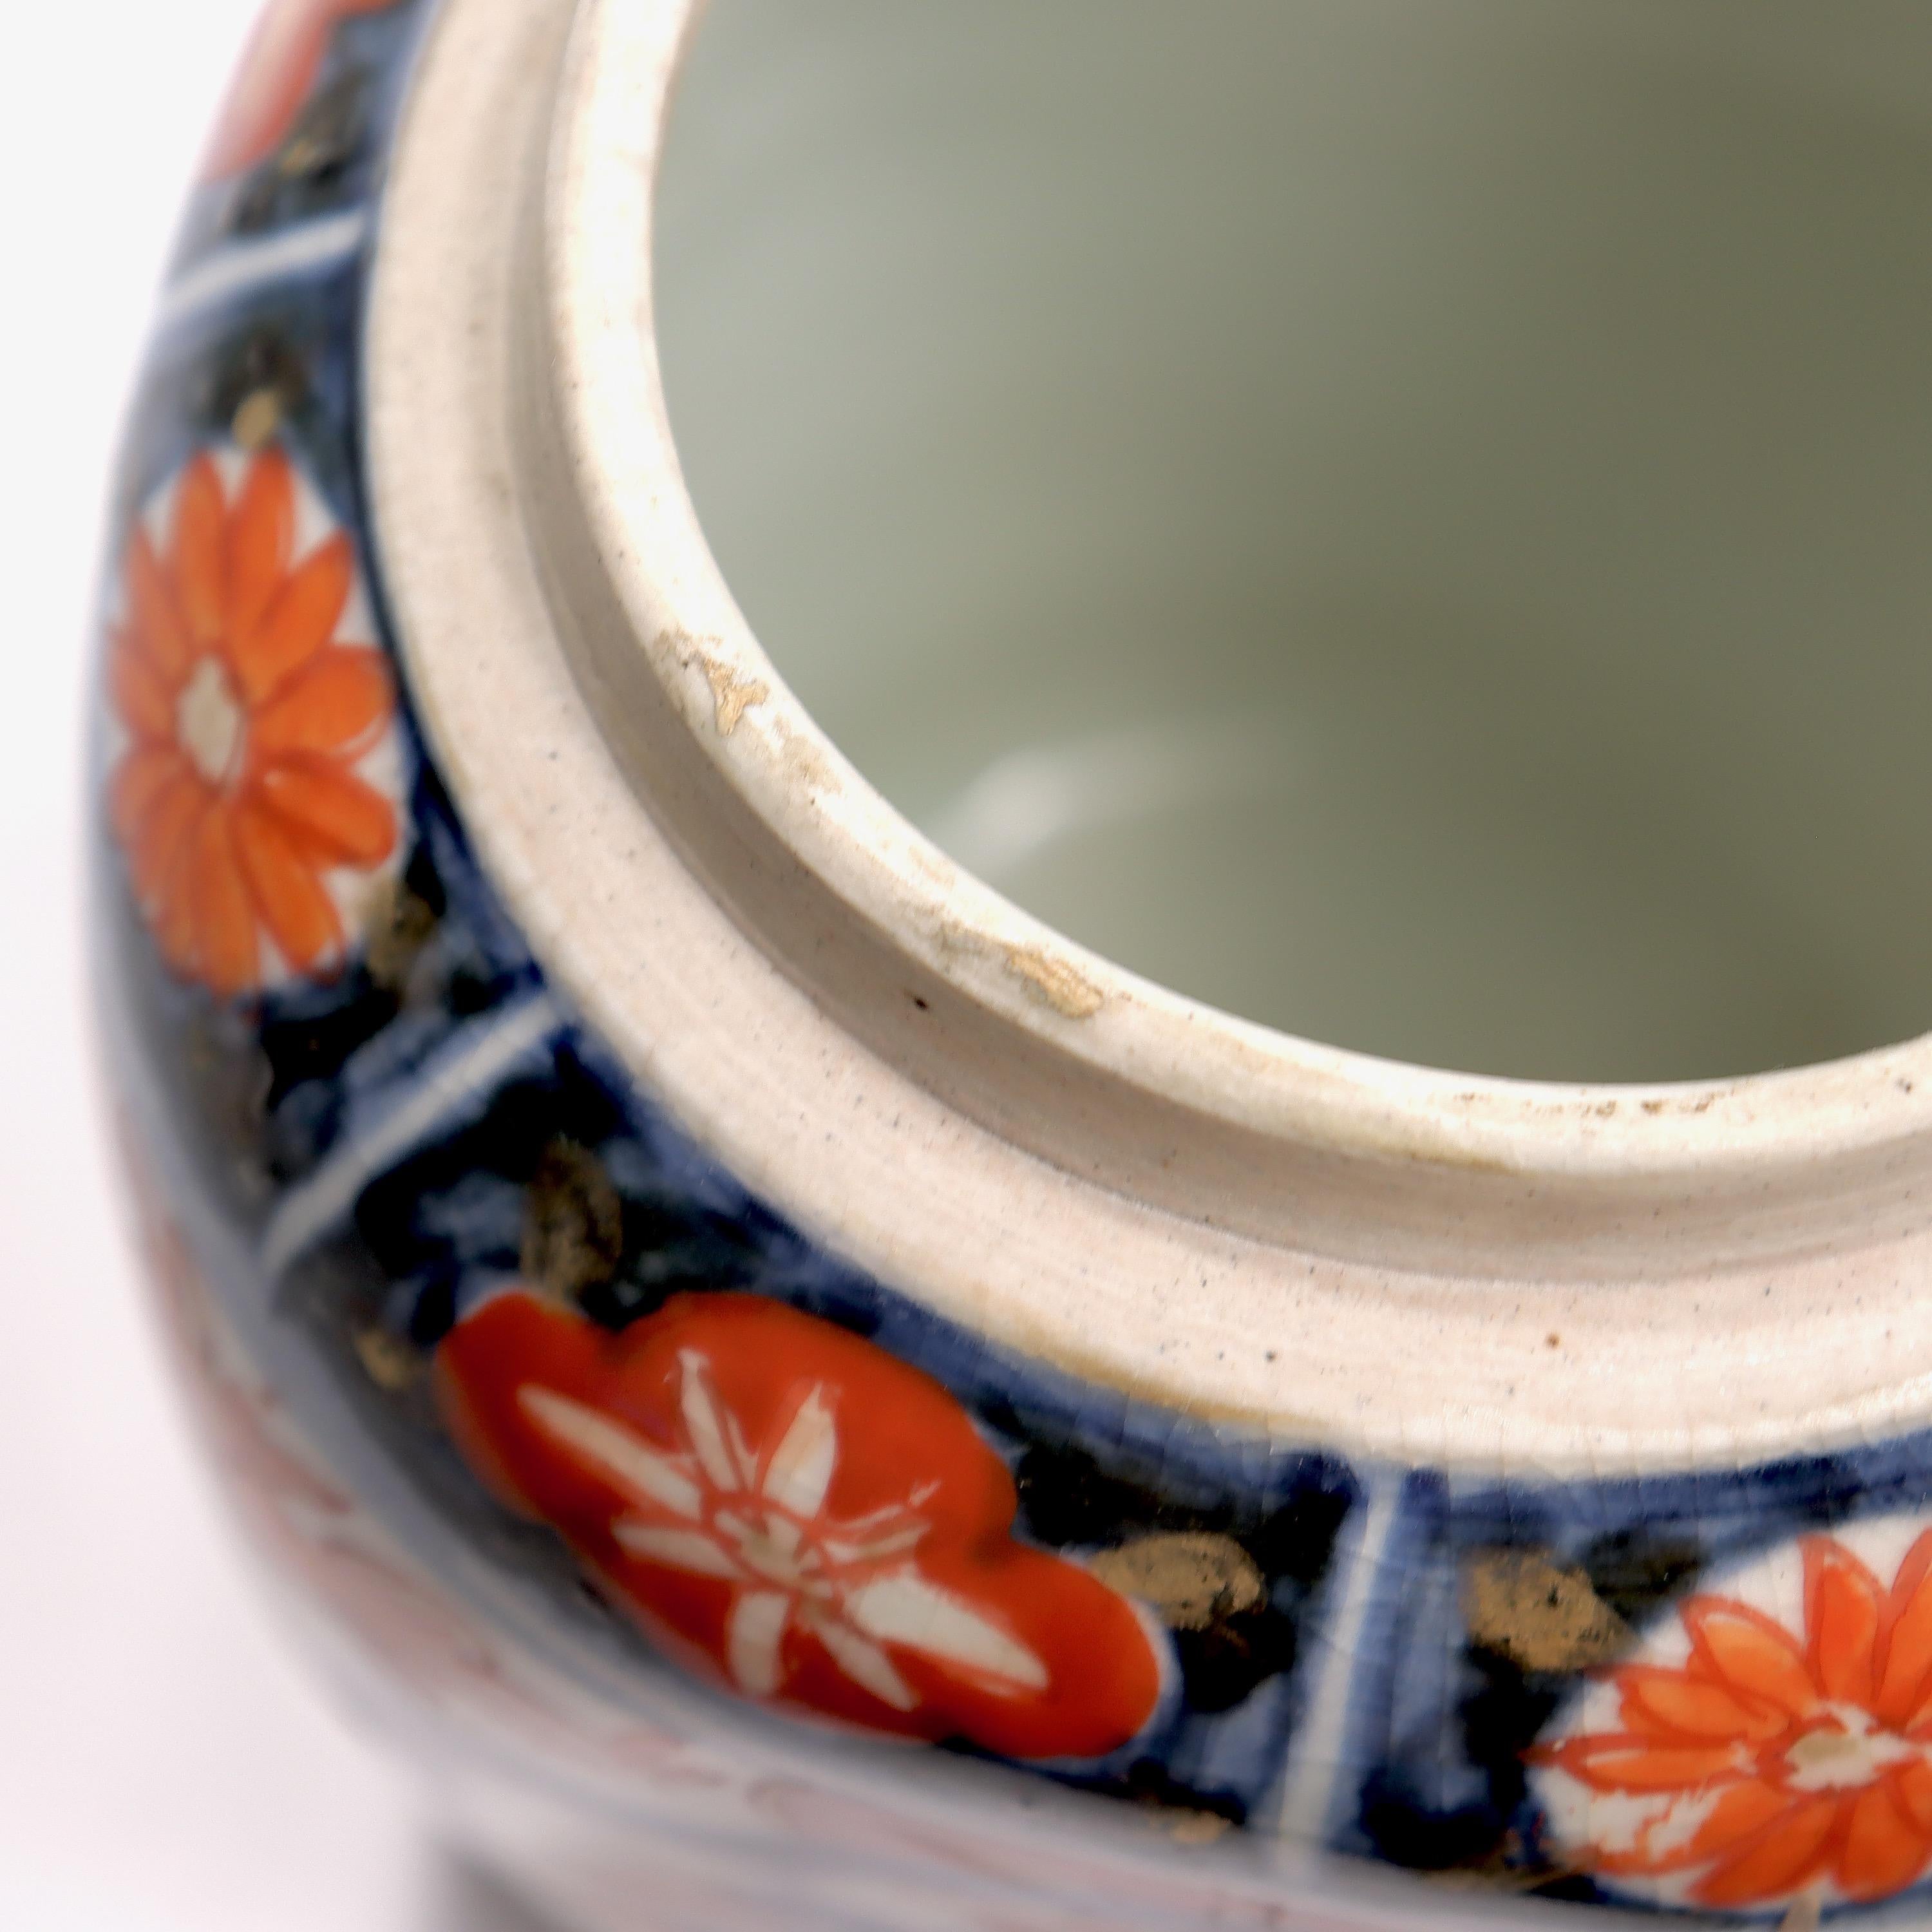 Old or Antique Japanese Imari Porcelain Covered Jar or Urn For Sale 10